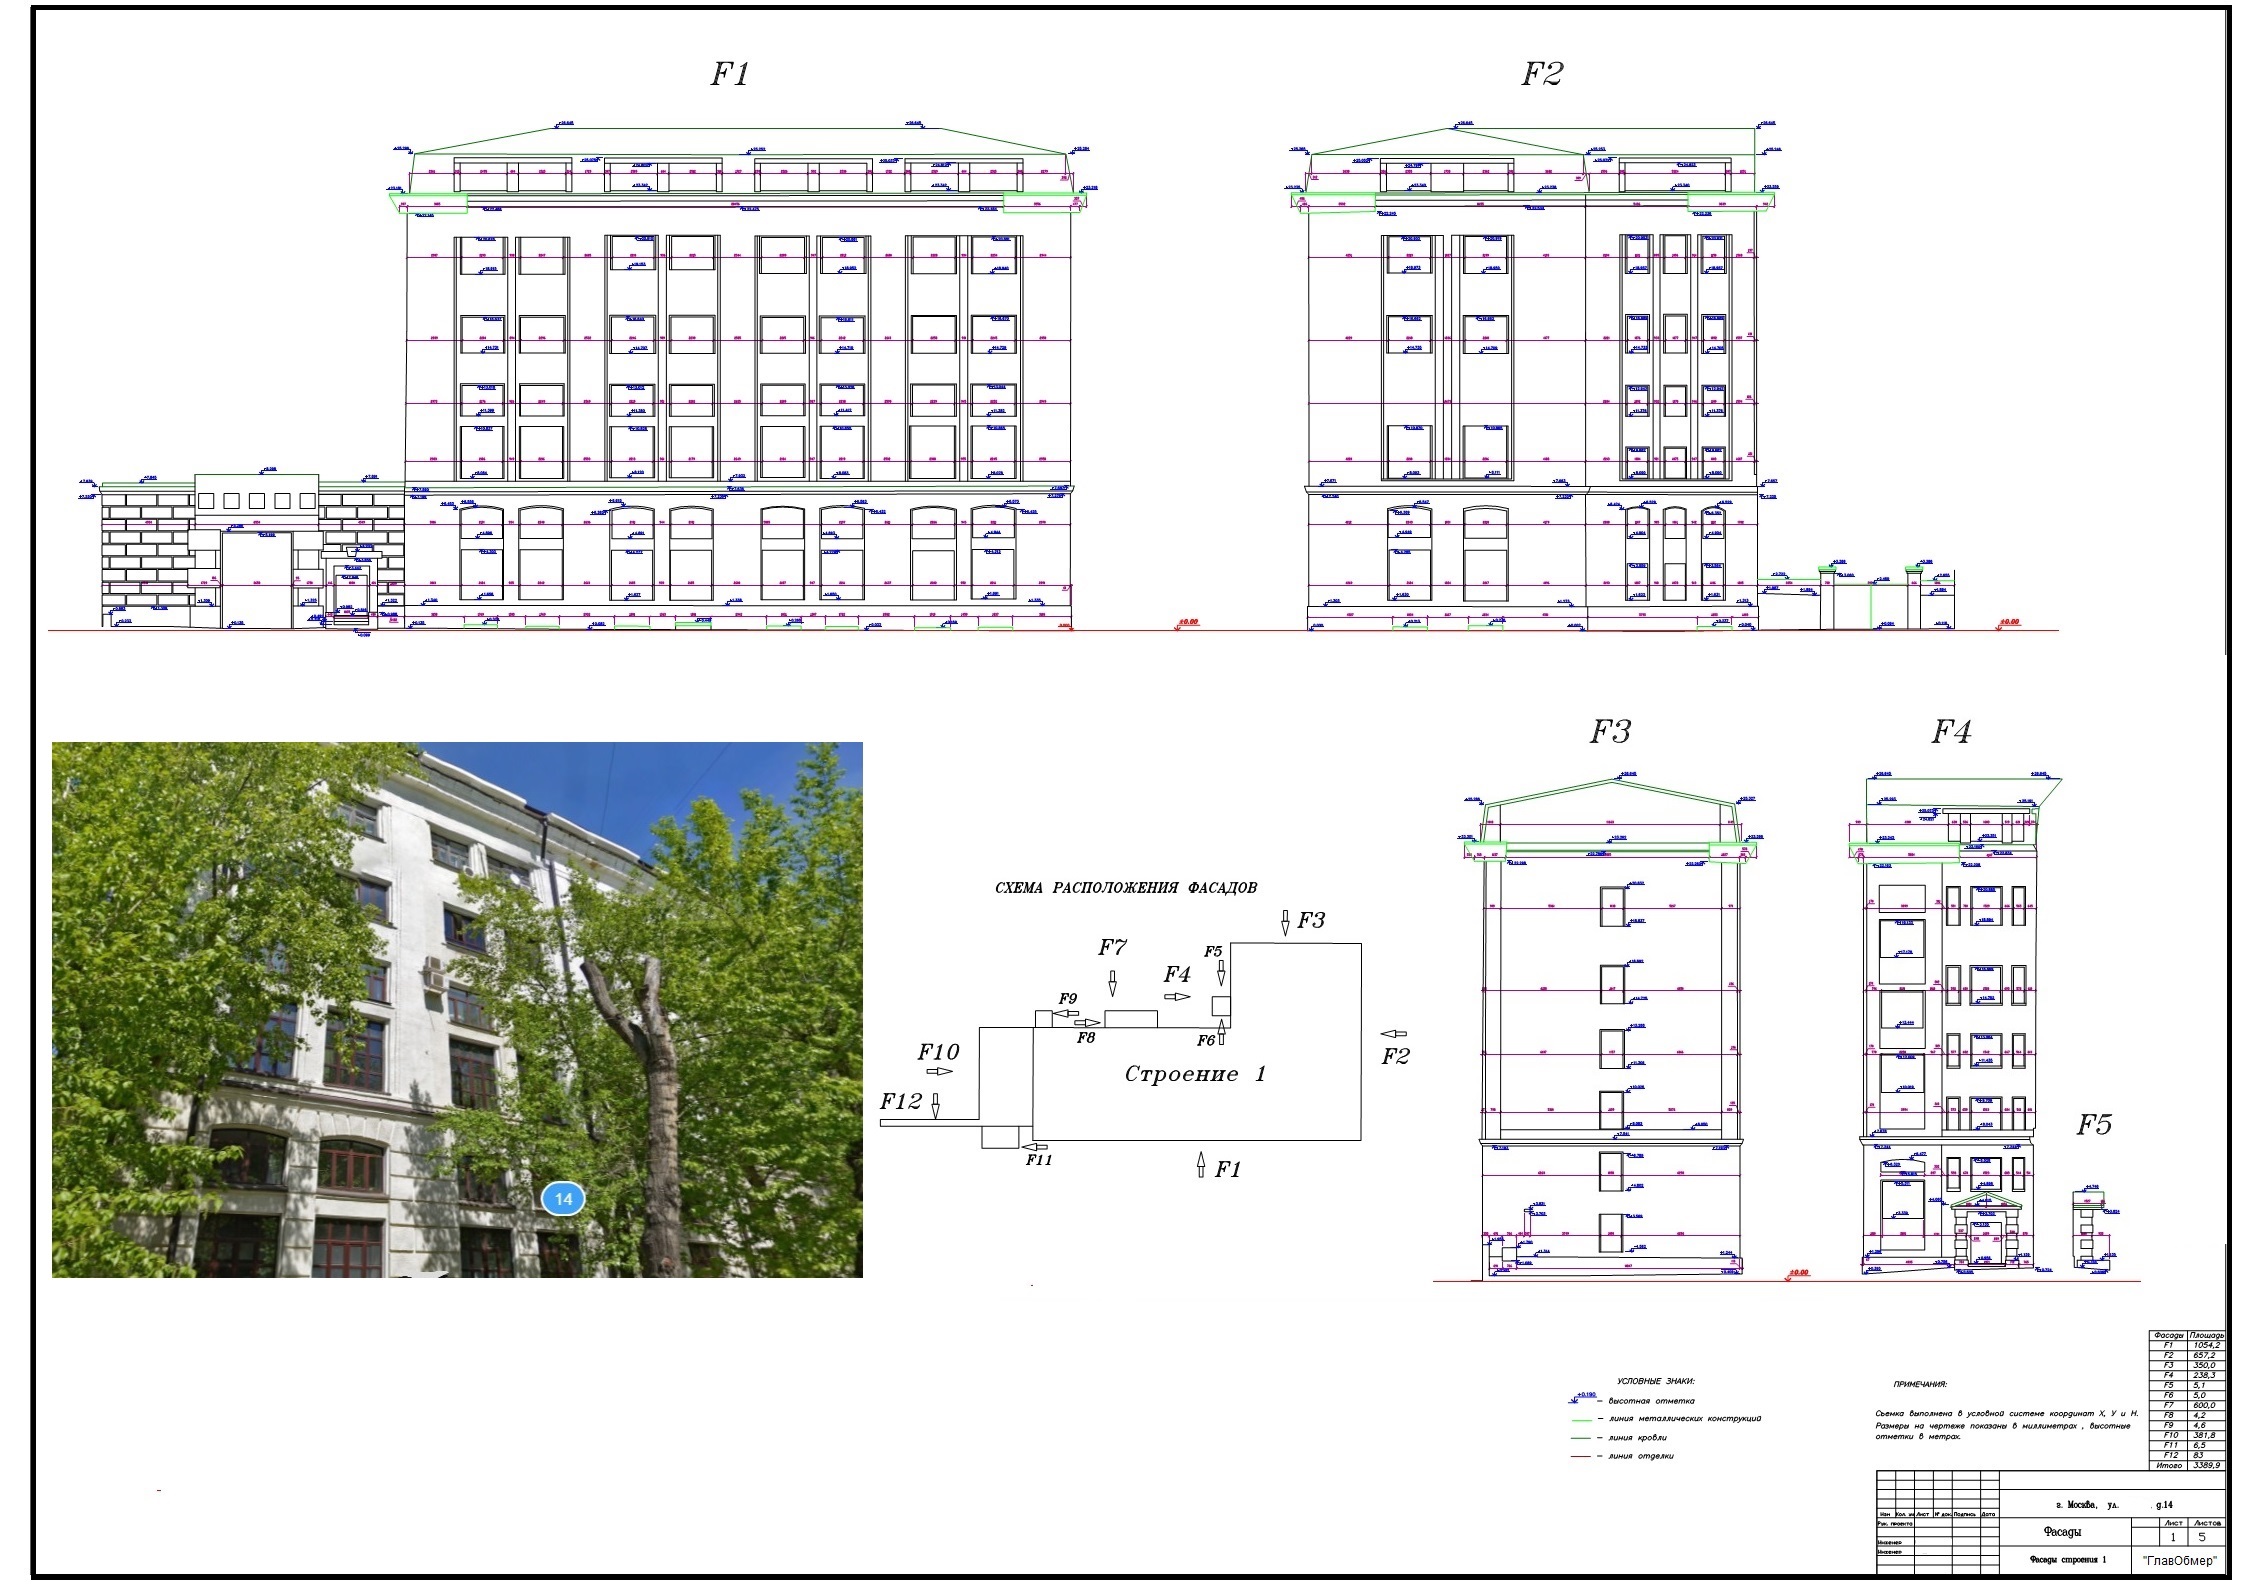  Обмер фасадов здания 